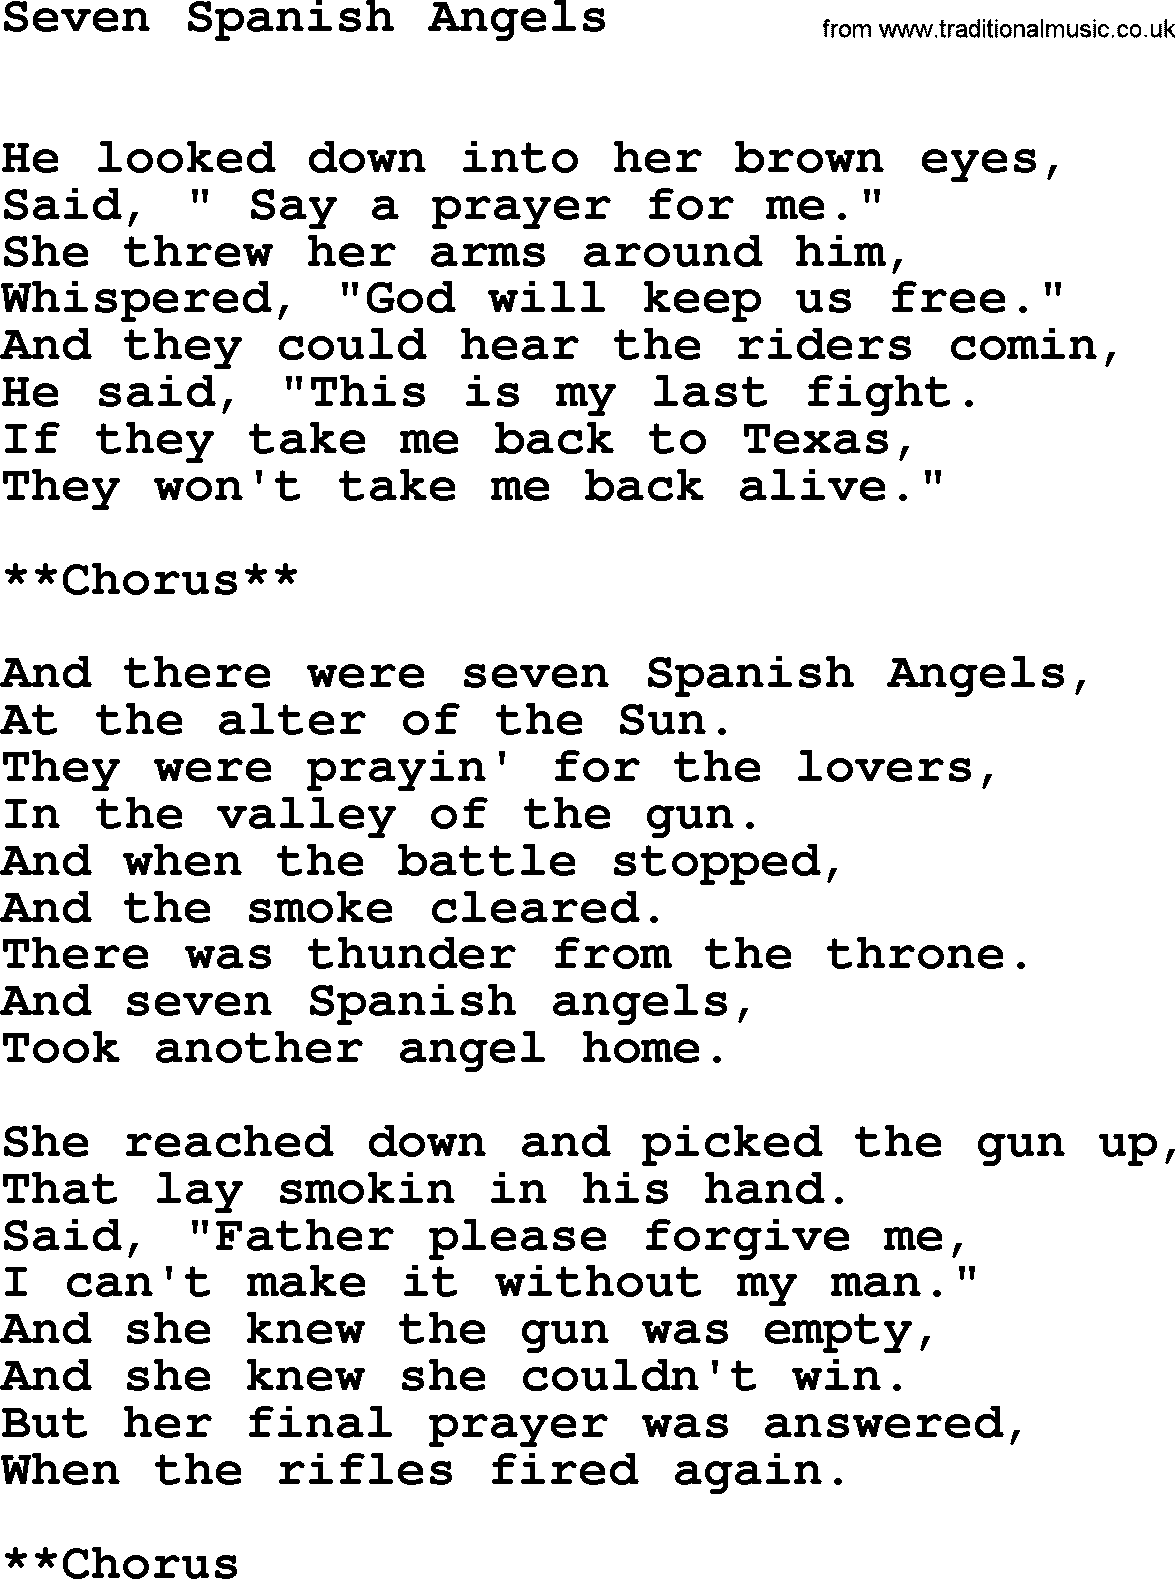 Willie Nelson song: Seven Spanish Angels lyrics